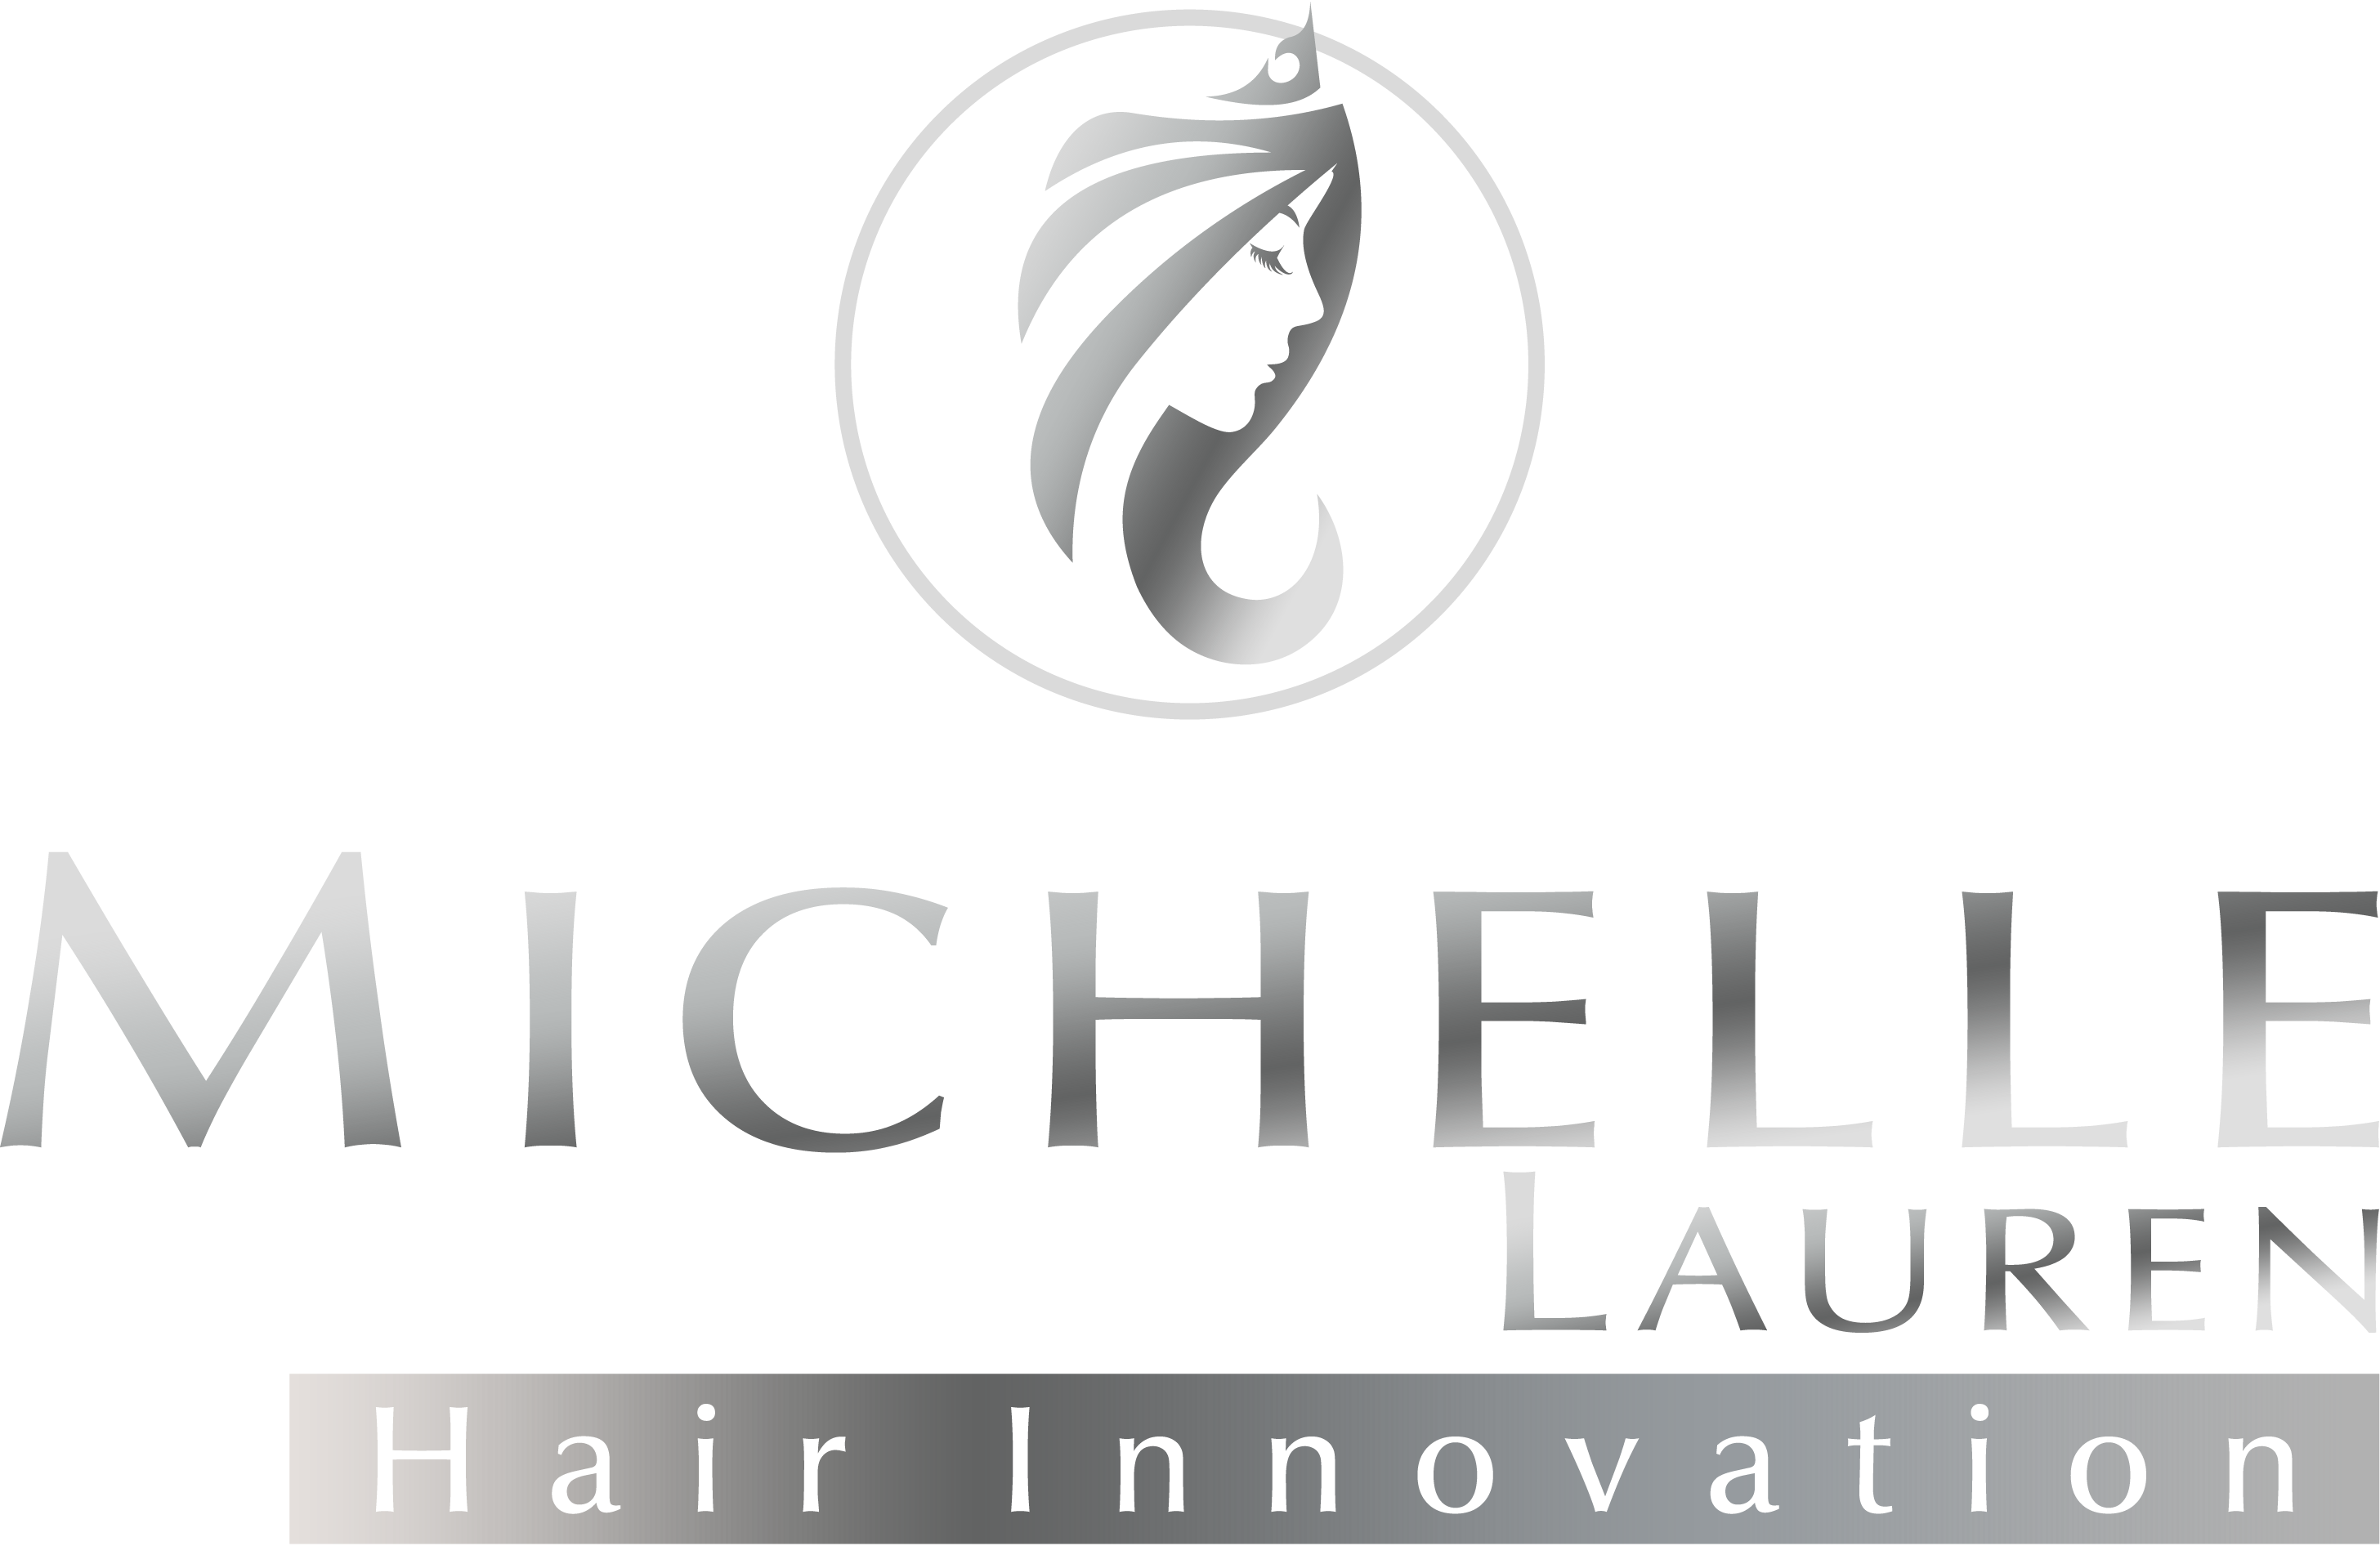 Michelle Lauren - Hair Innovation logo